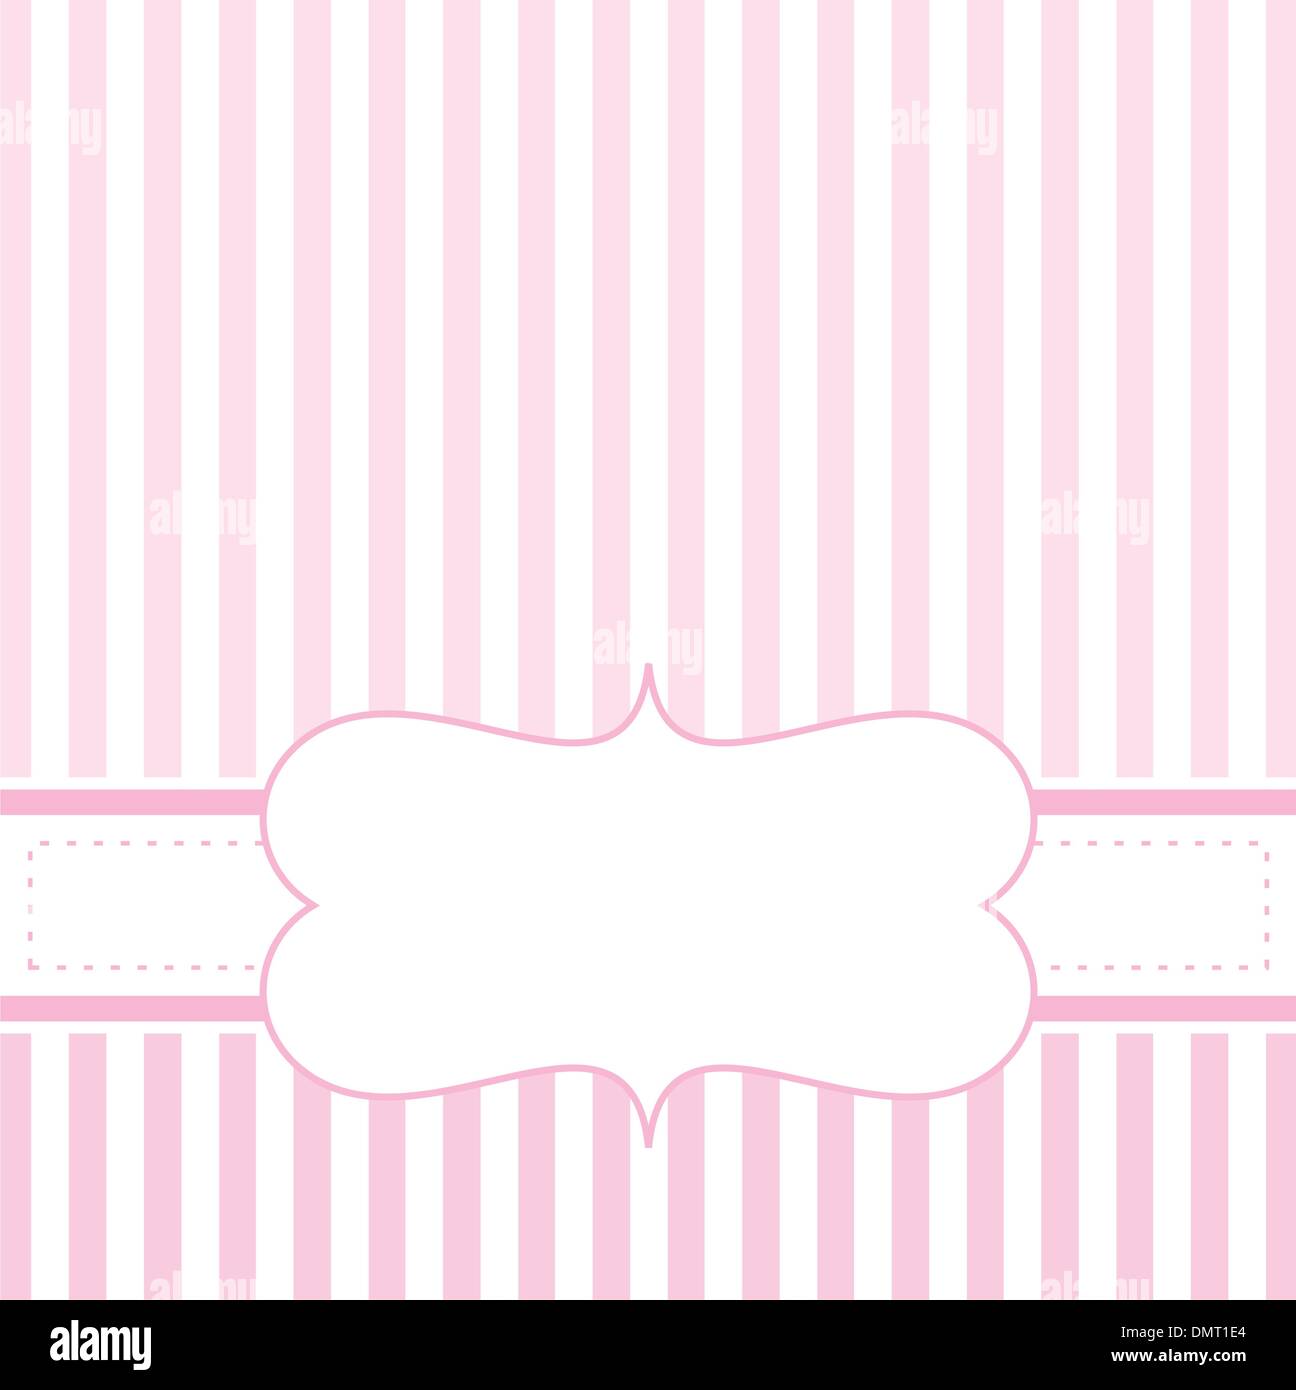 Pink valentines carte vecteur ou de mariage avec des rayures blanches sur fond rose mignon Illustration de Vecteur